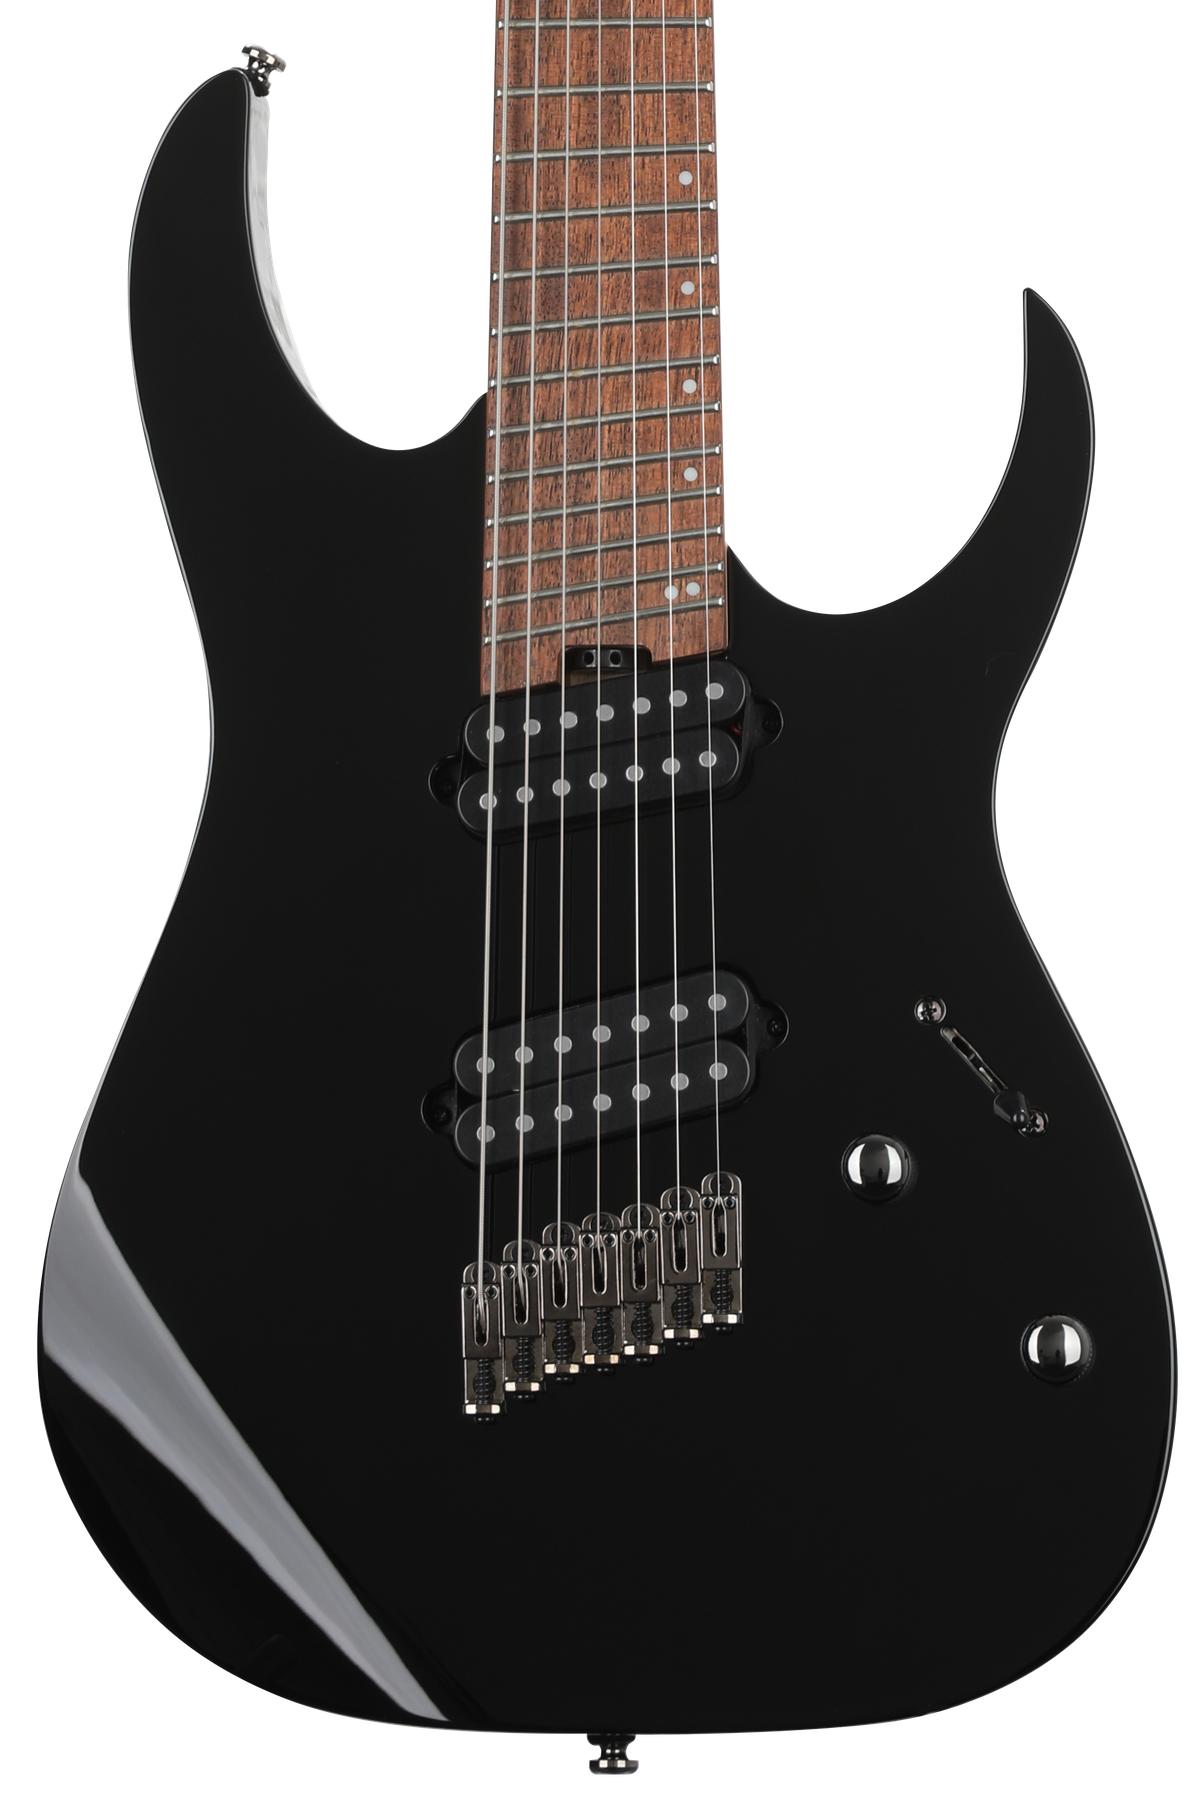 Ibanez RGMS7 7-string Electric Guitar - Black